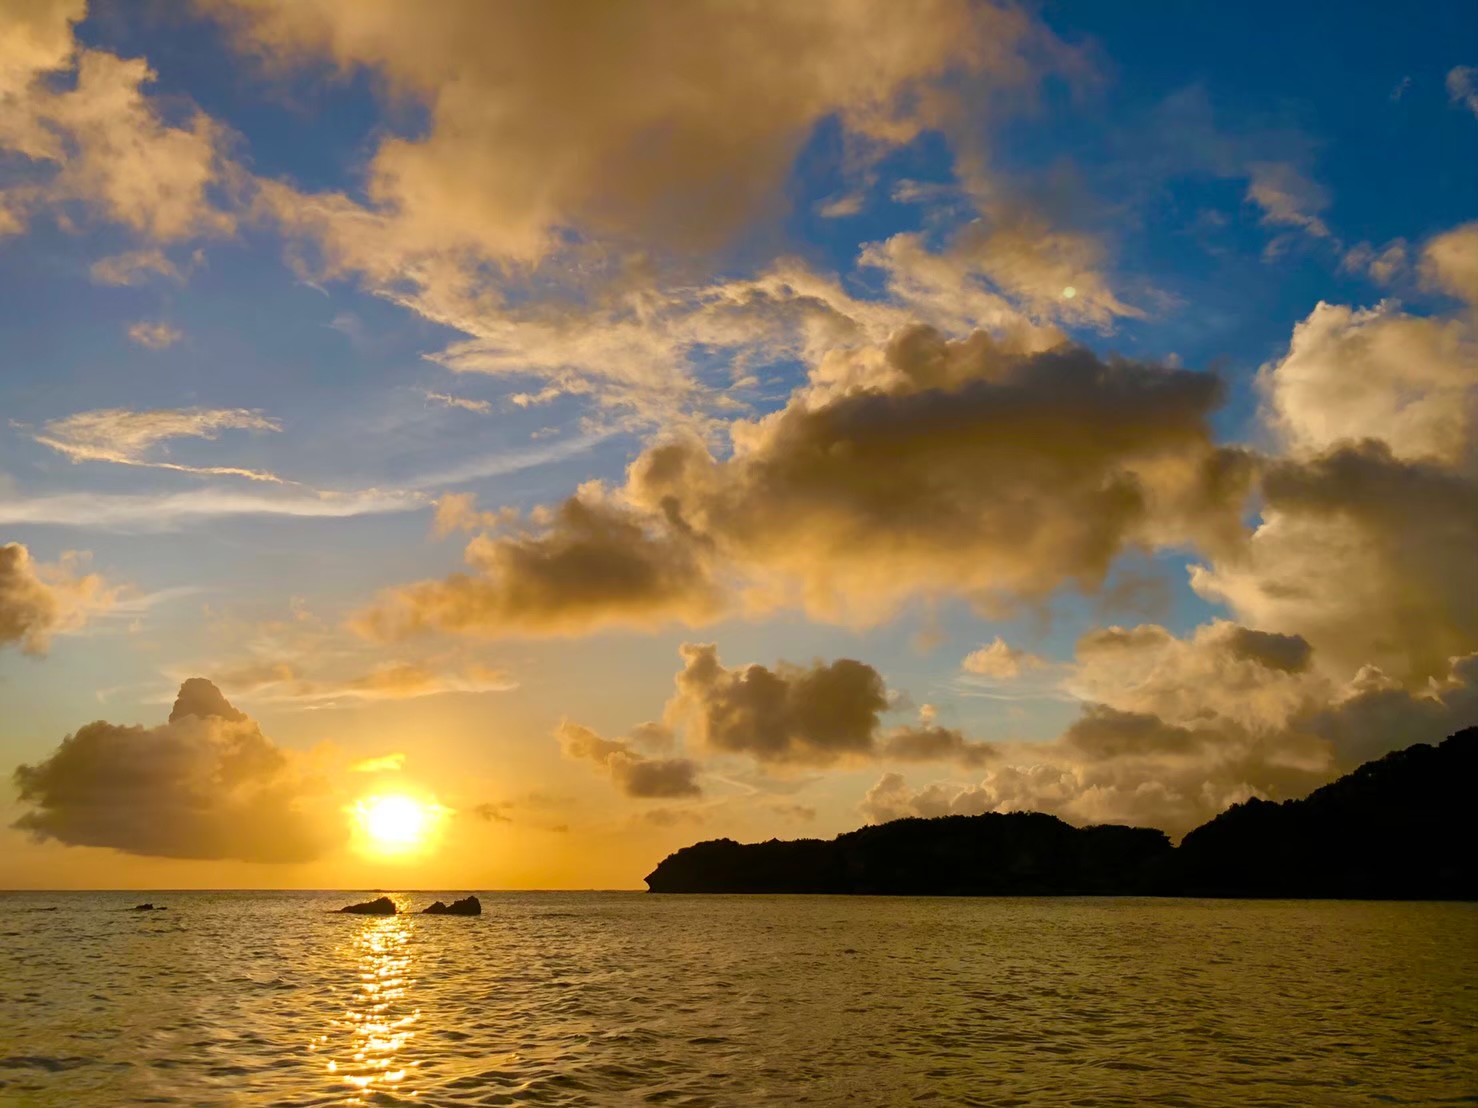 Sunset Kayak Tour in Okinawa